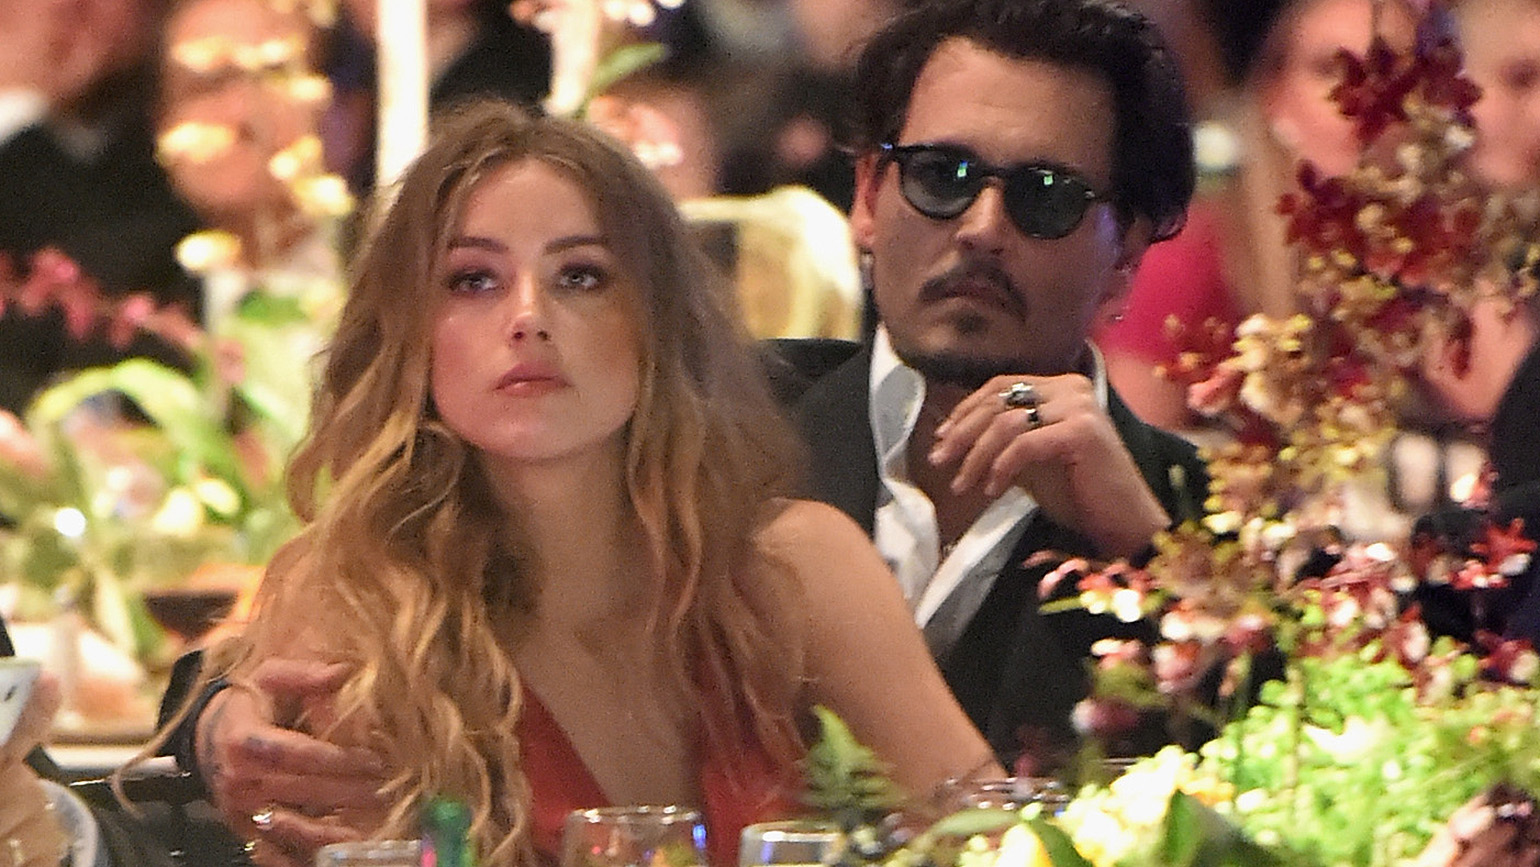 Johnny Depp and Amanda Heard